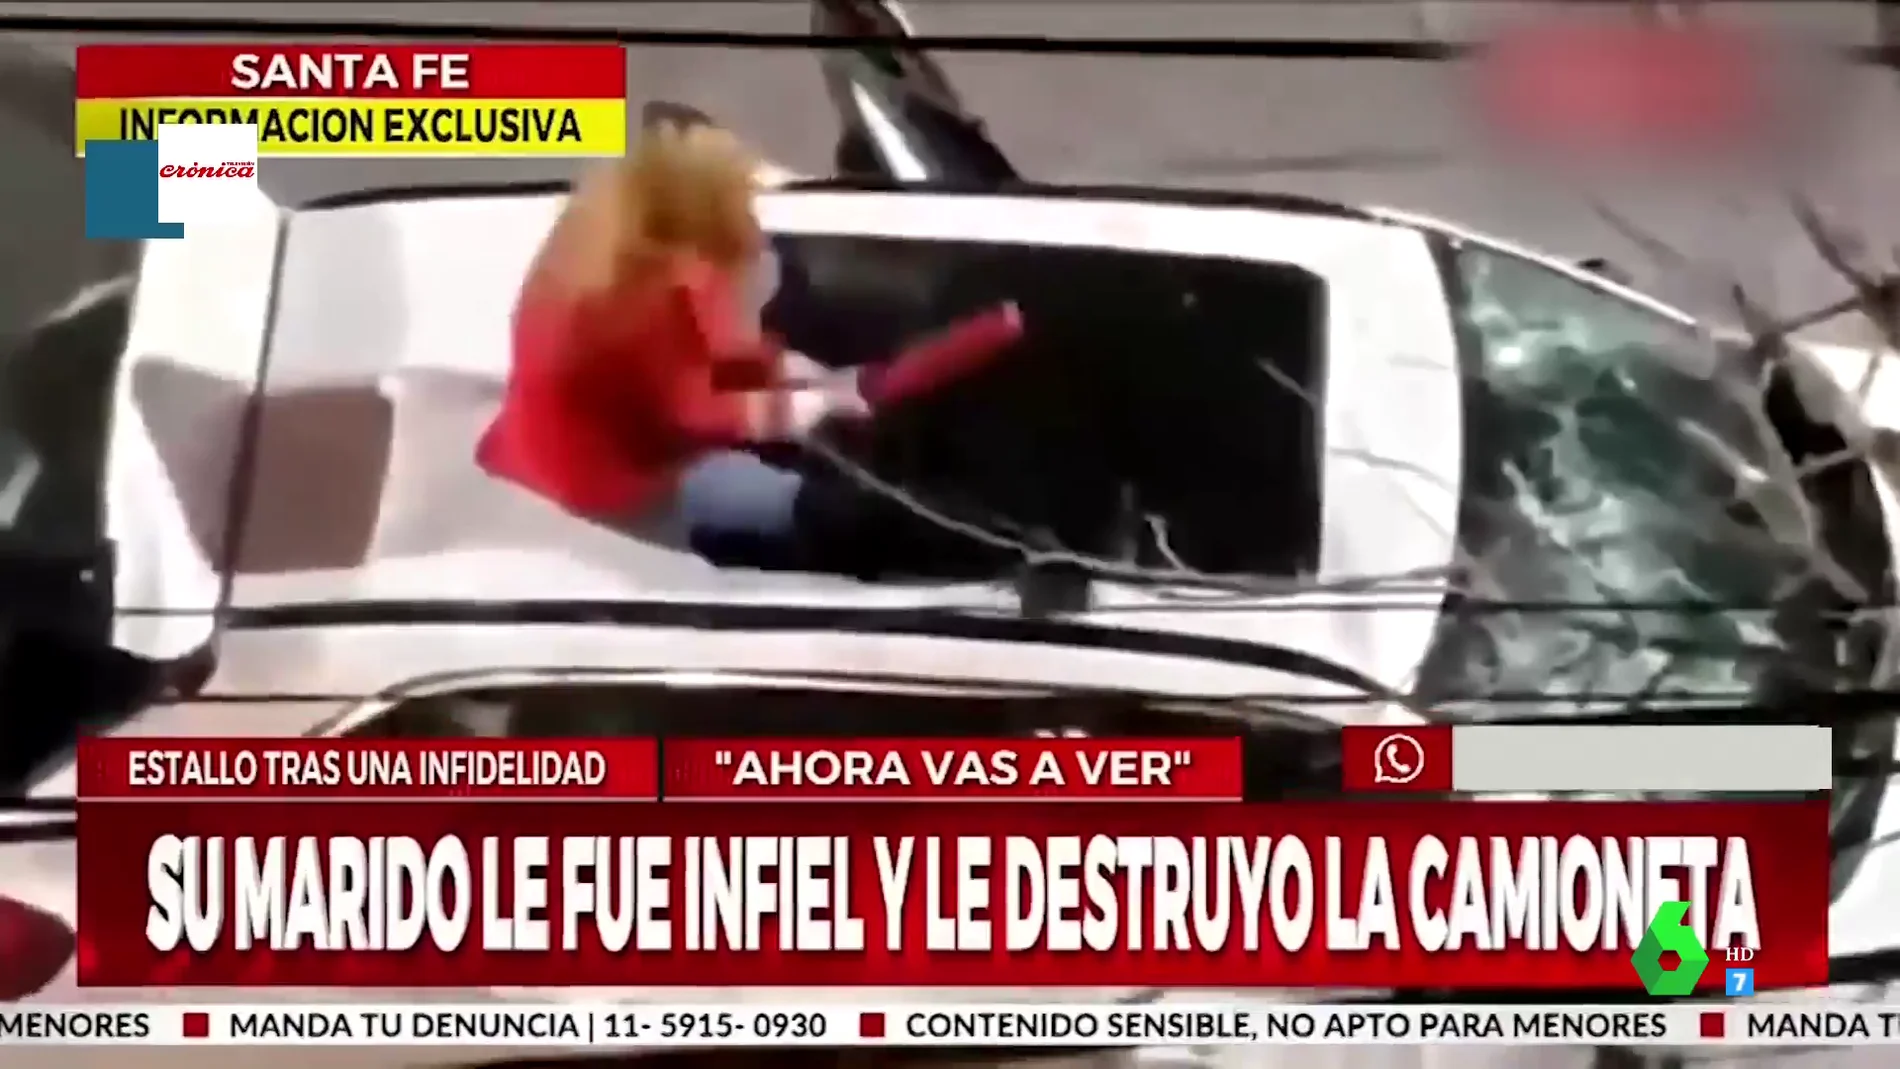 El impactante momento en el que una mujer destroza el coche de su marido tras enterarse de que le ha sido infiel